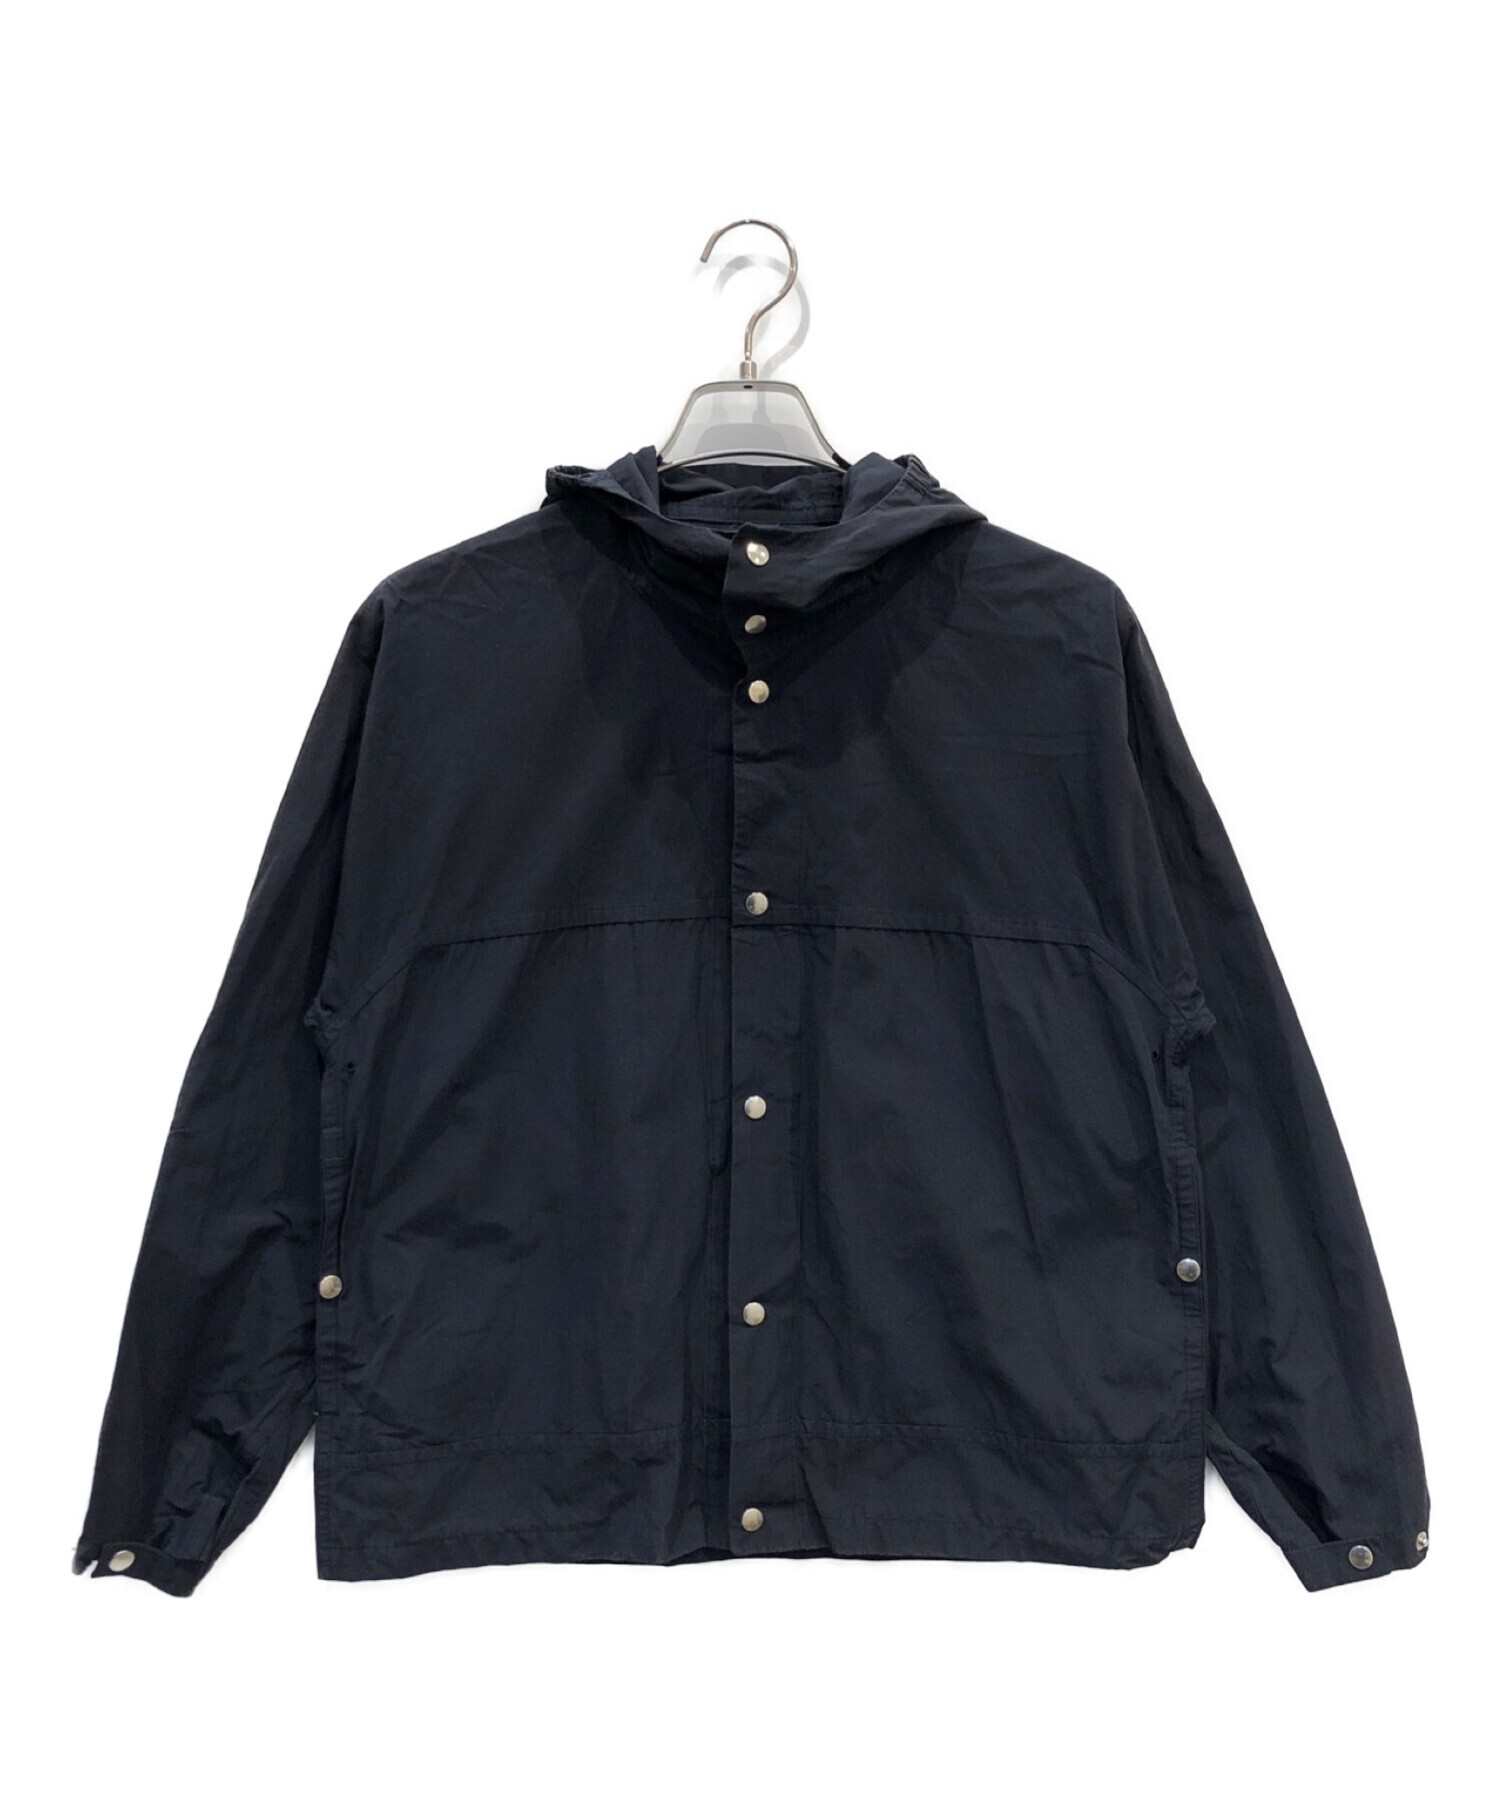 YAECA (ヤエカ) 60/40クロスフードシャツ ネイビー サイズ:SMALL